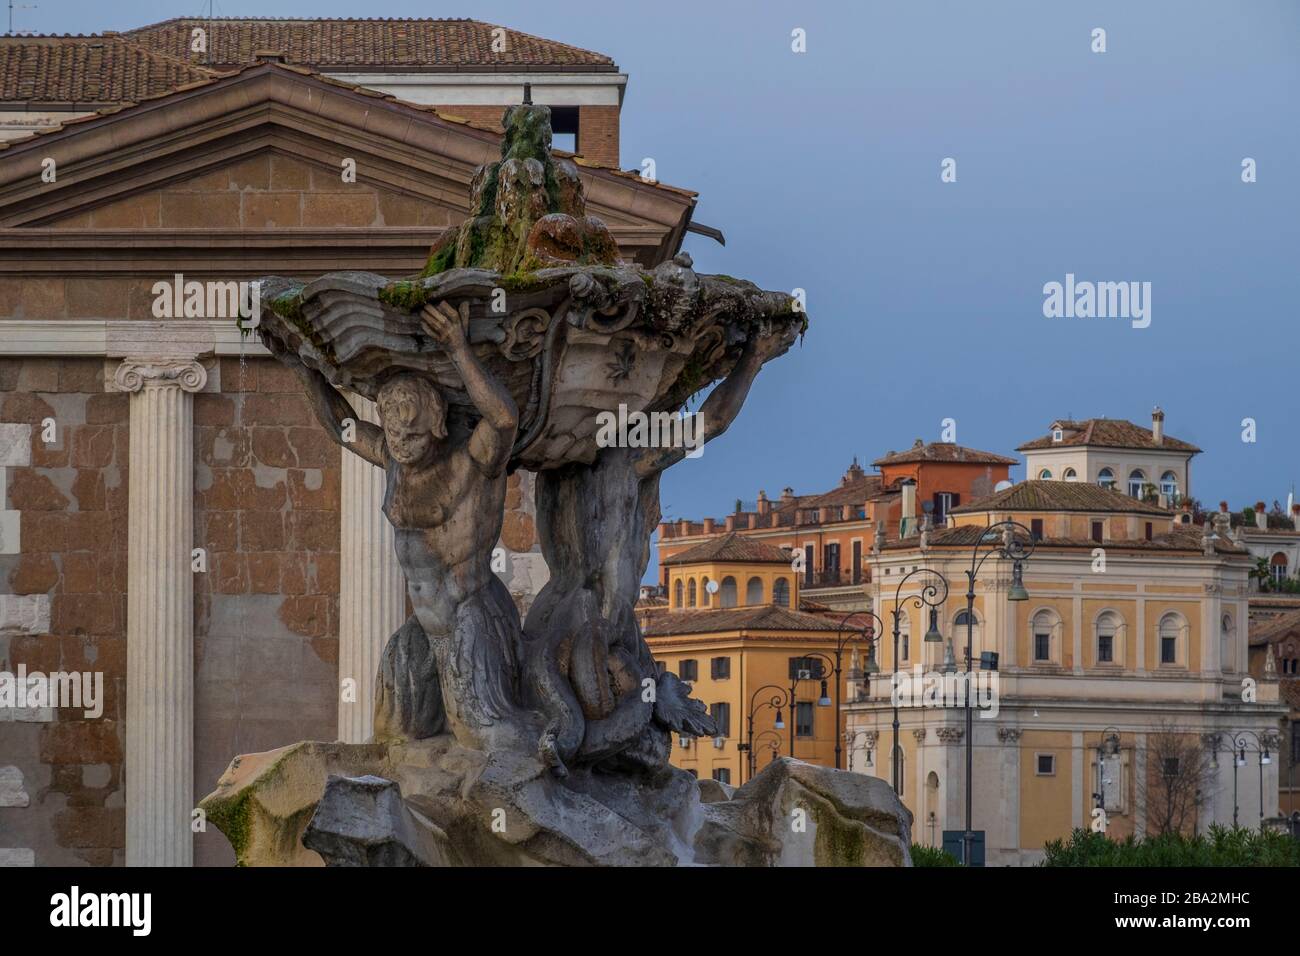 Italy, Rome, Fountain of tritons. Stock Photo